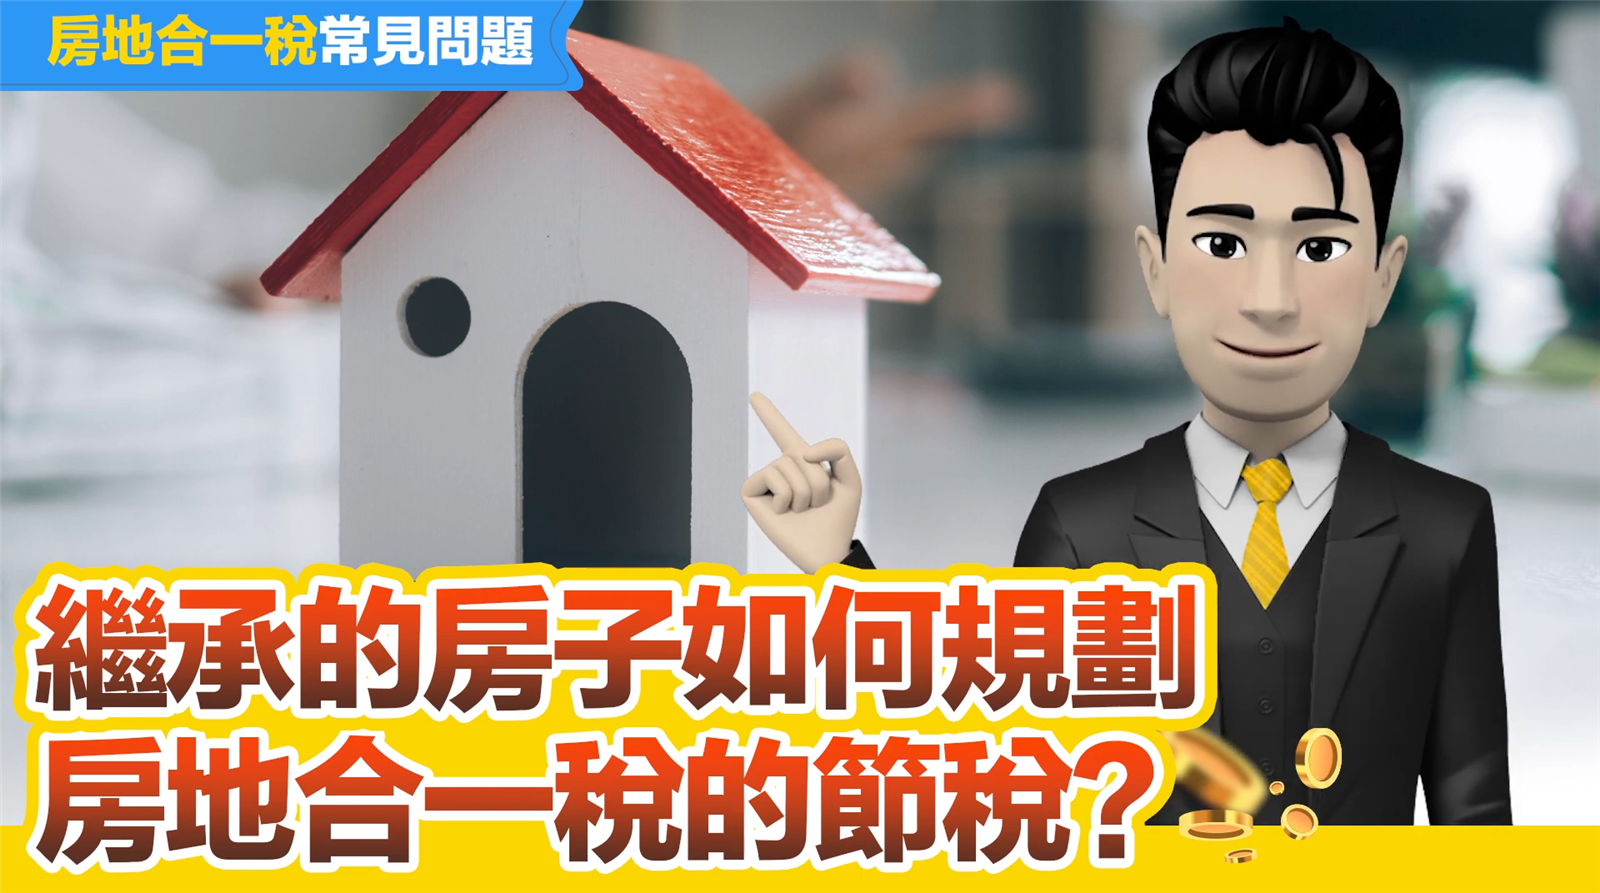 【房地合一稅】繼承的房子如何規劃房地合一稅的節稅?